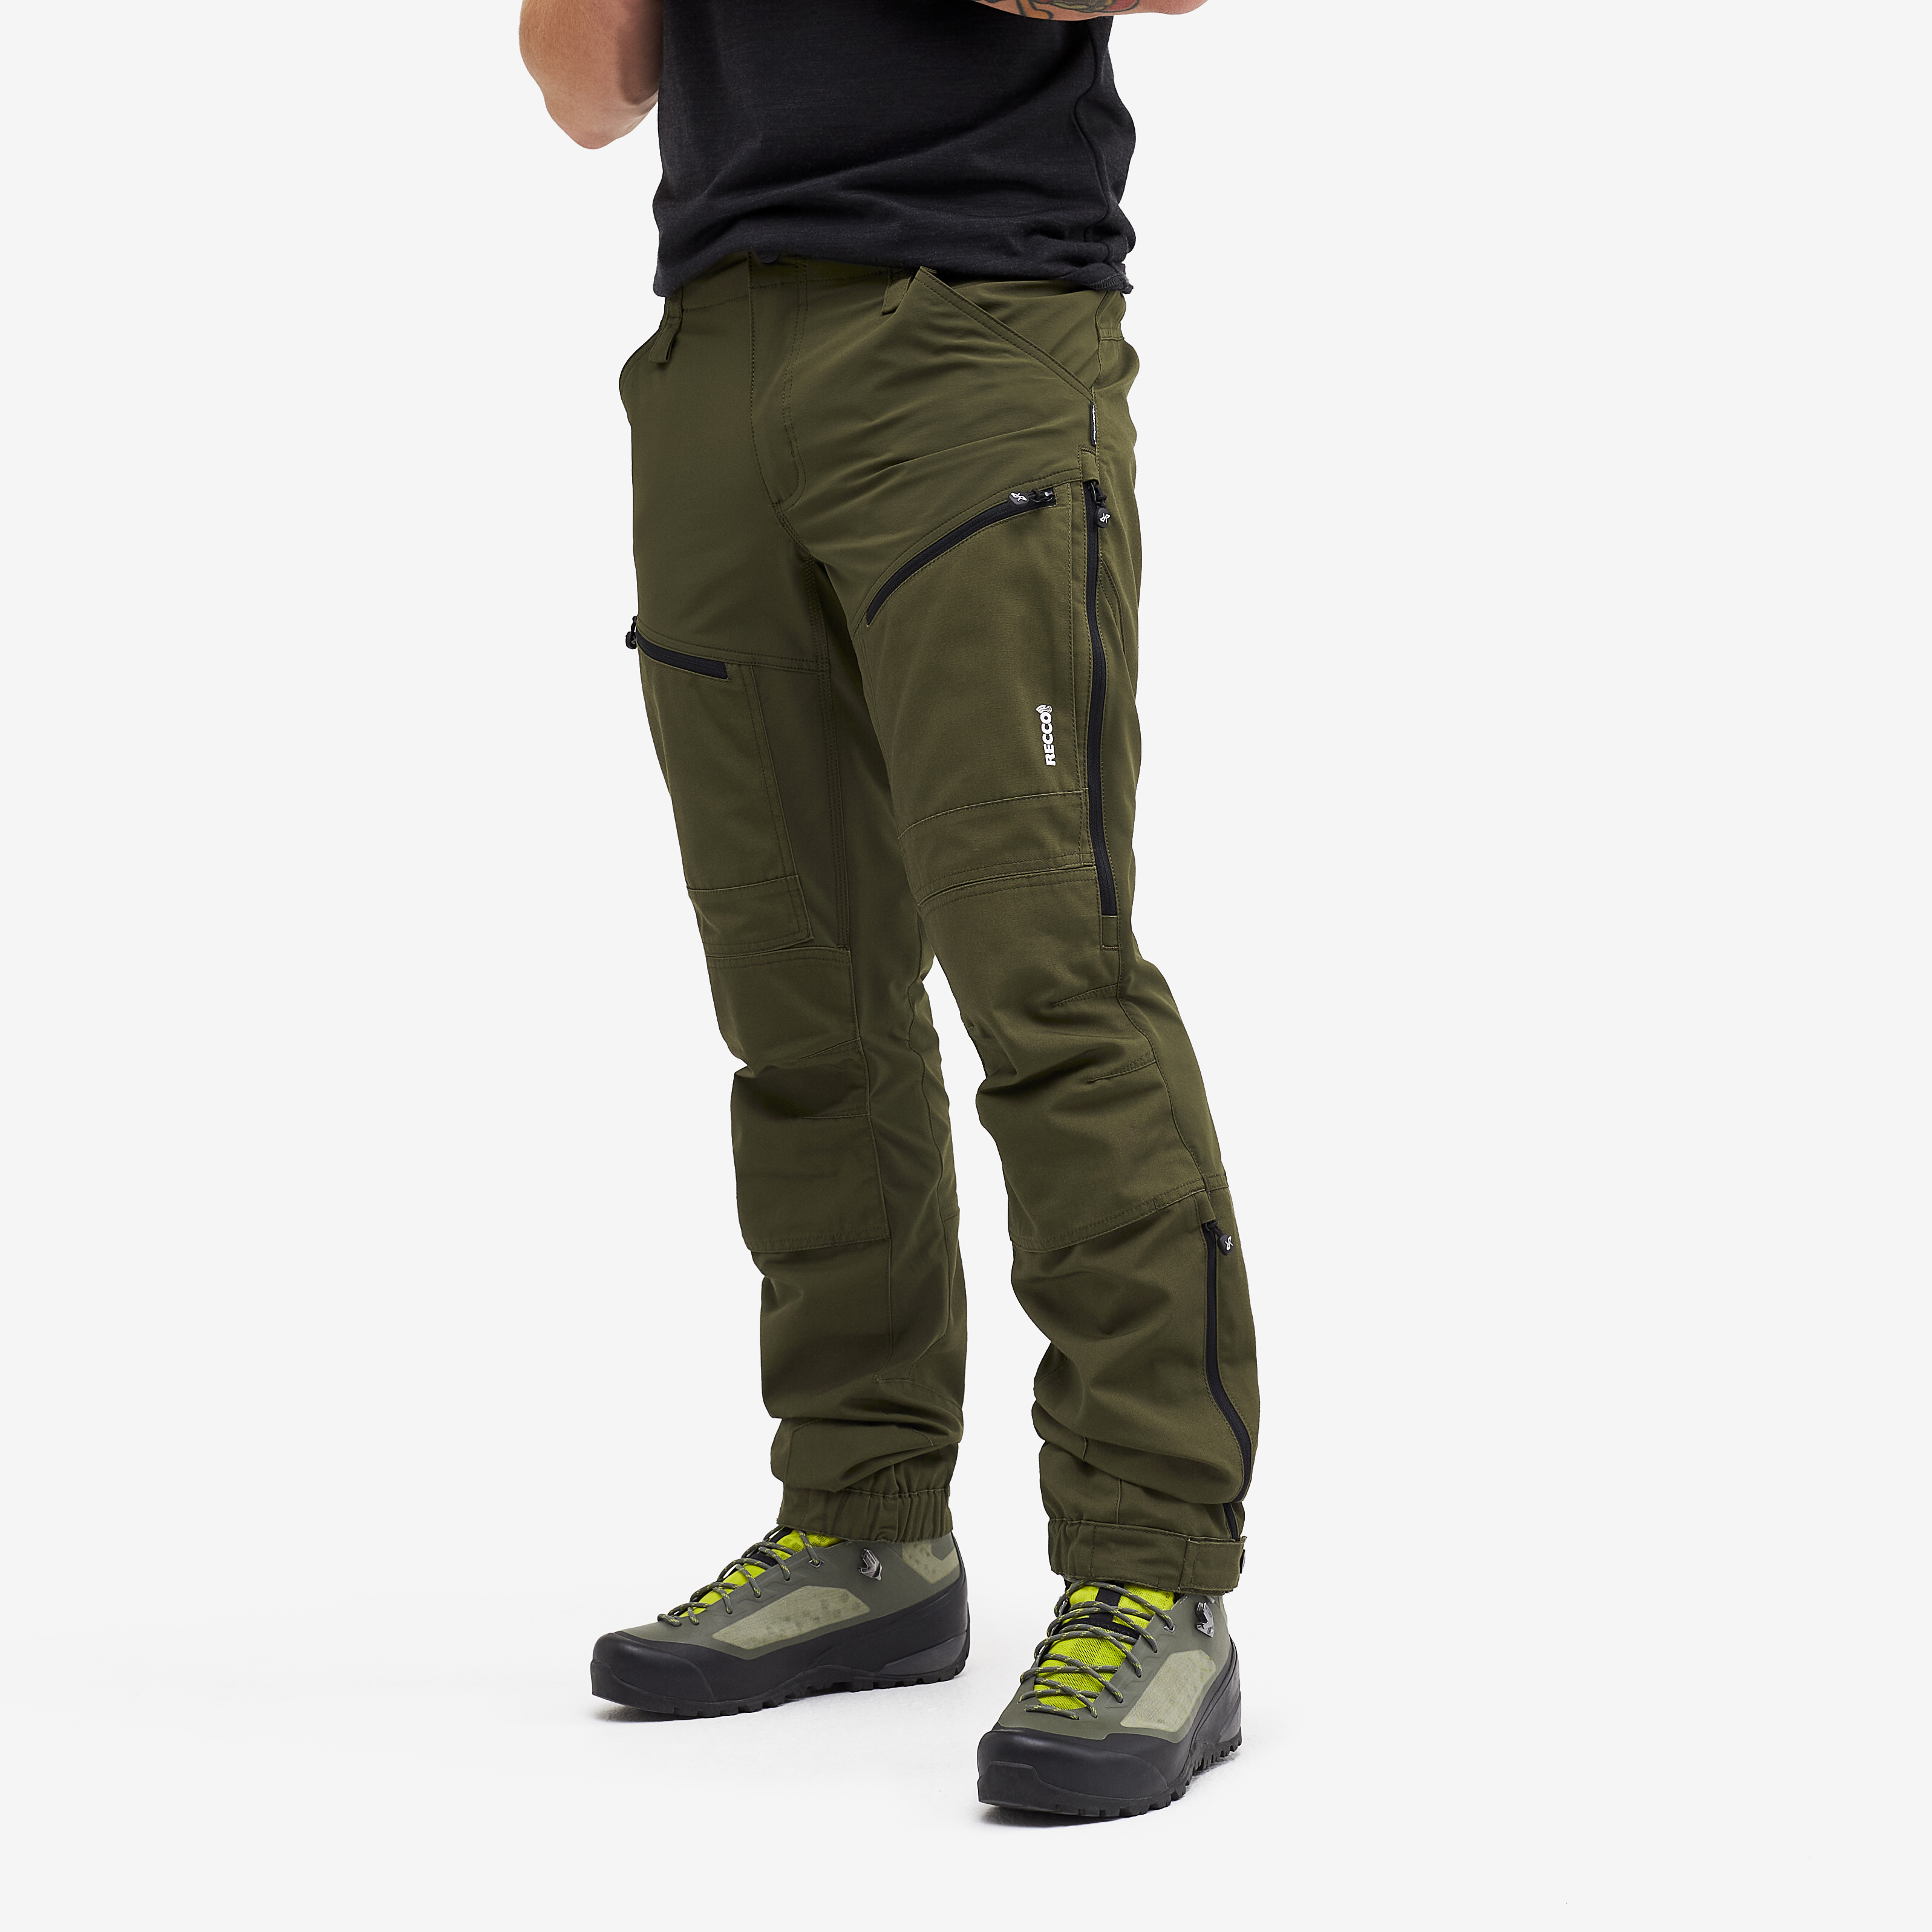 RVRC GP Pro Rescue turistické kalhoty pro muže v zelené barvě